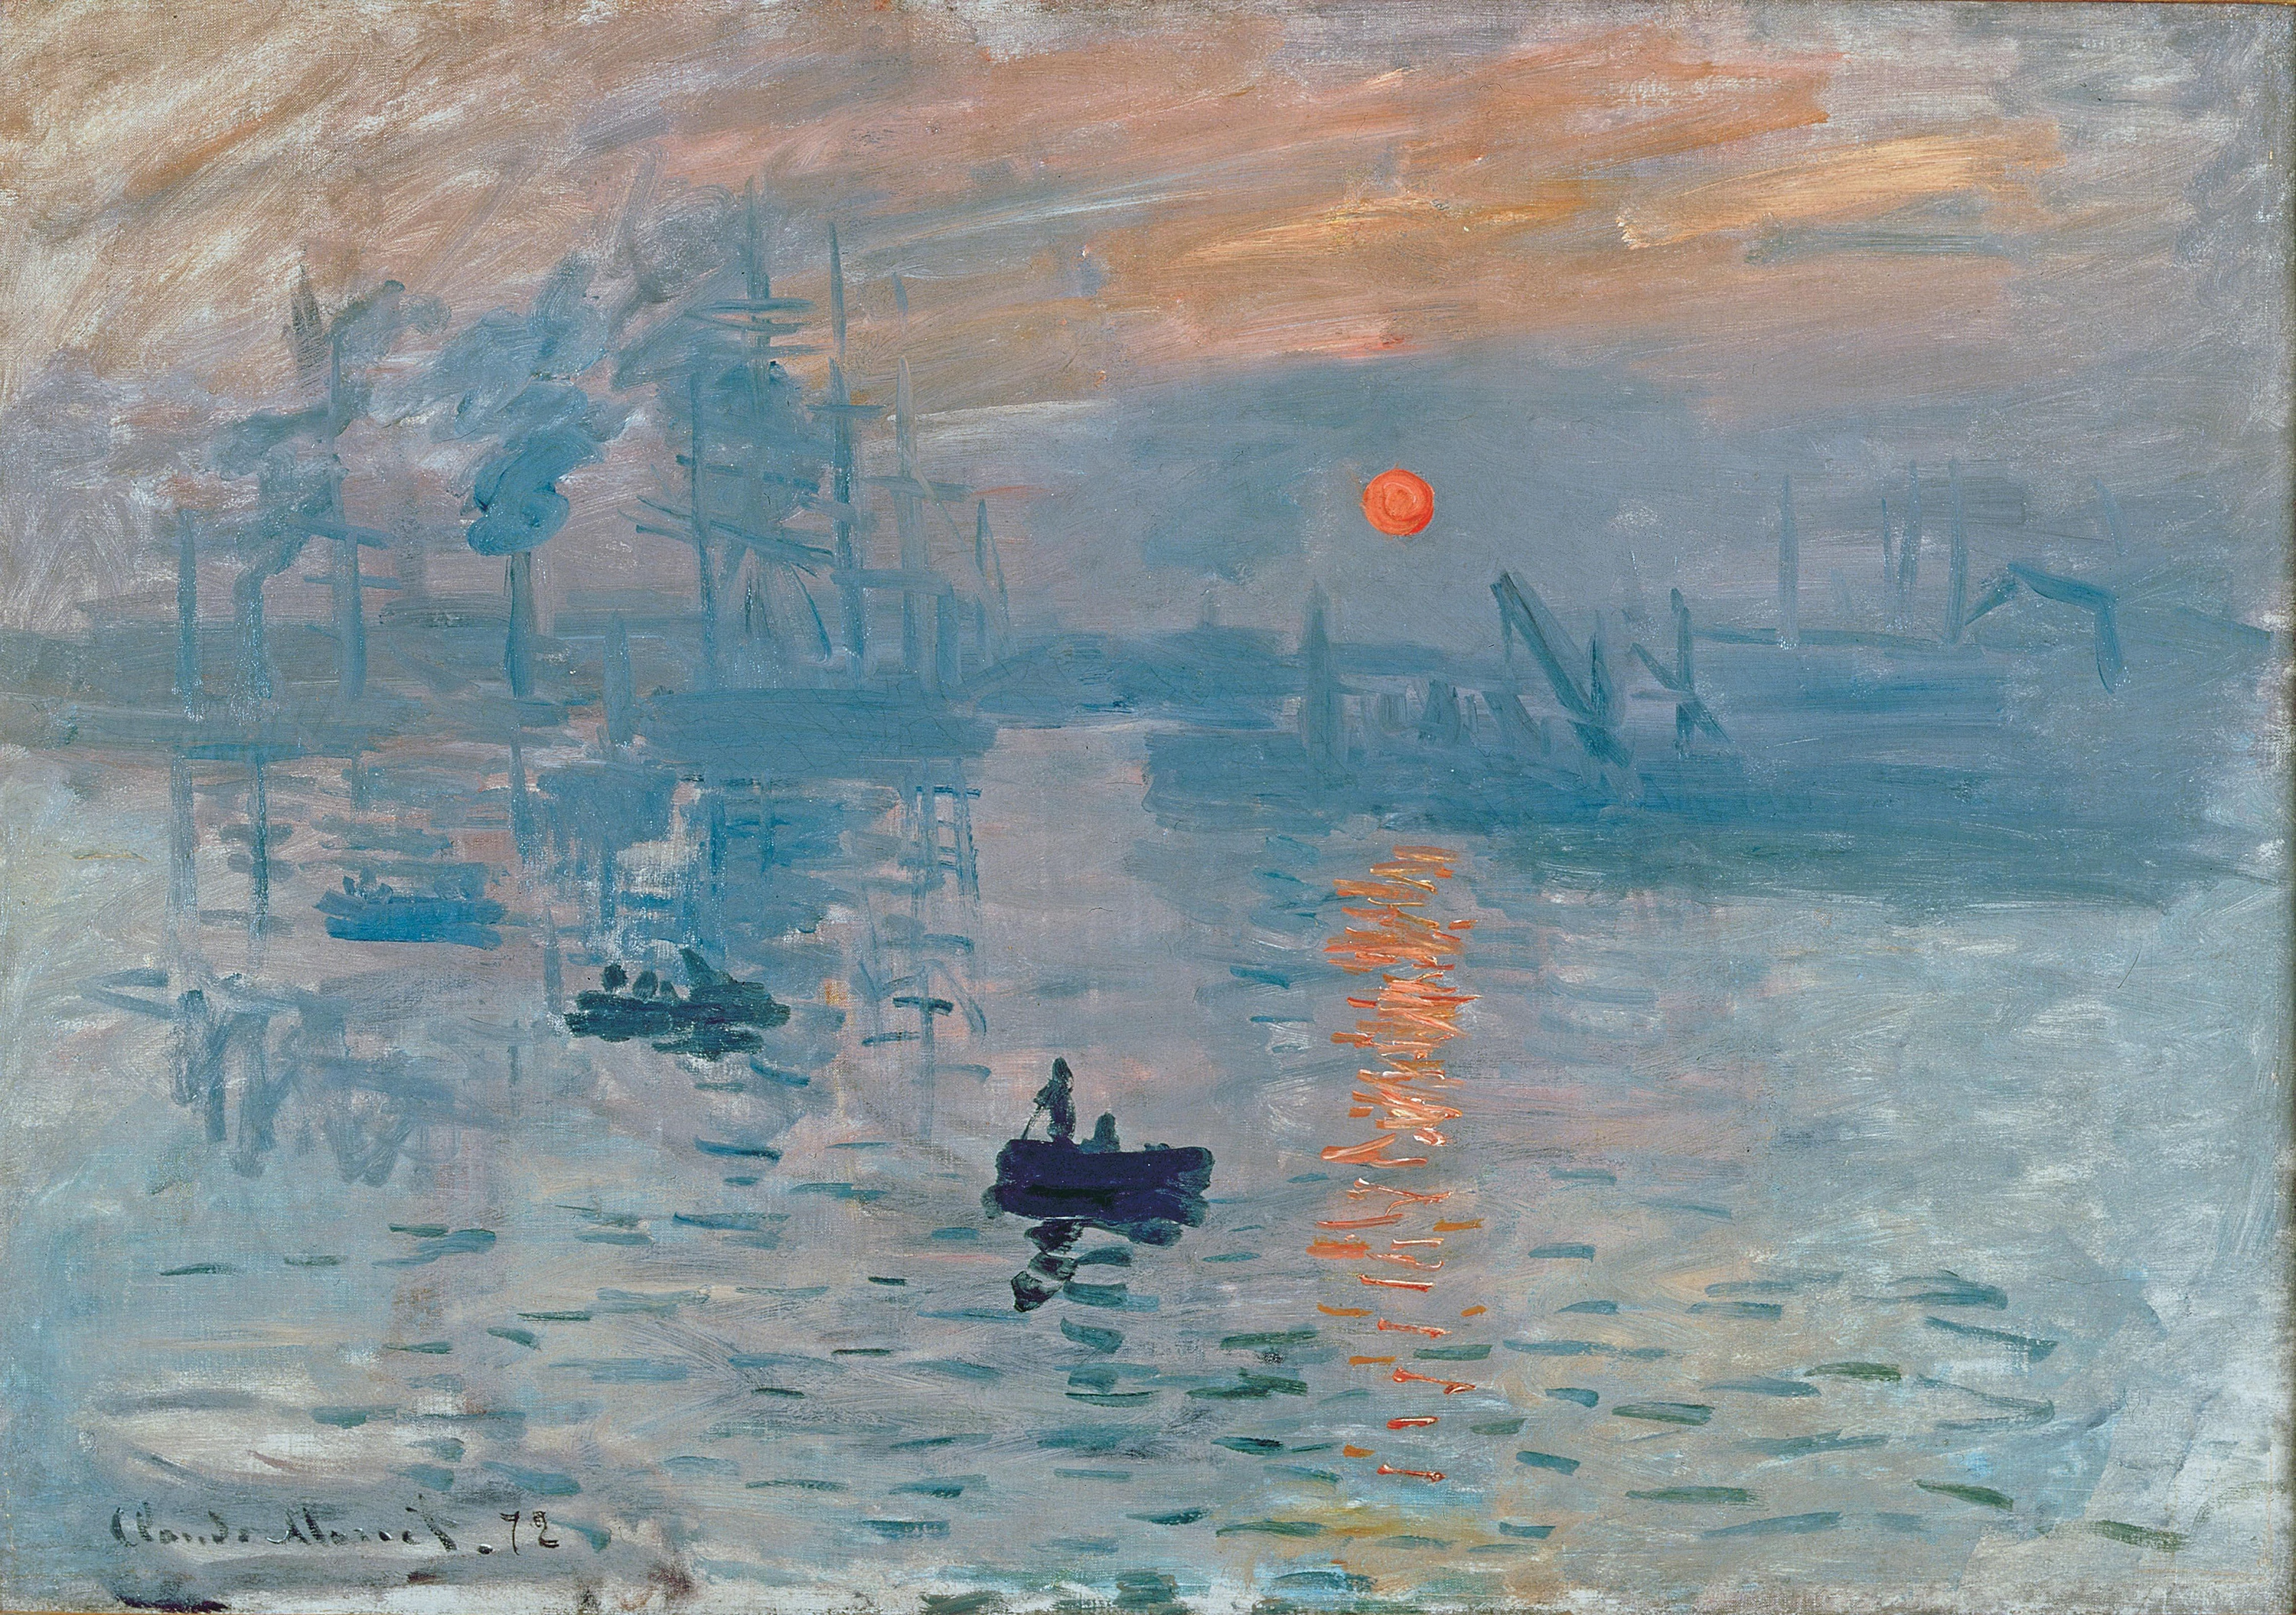 Impression Sunrise, Claude Monet